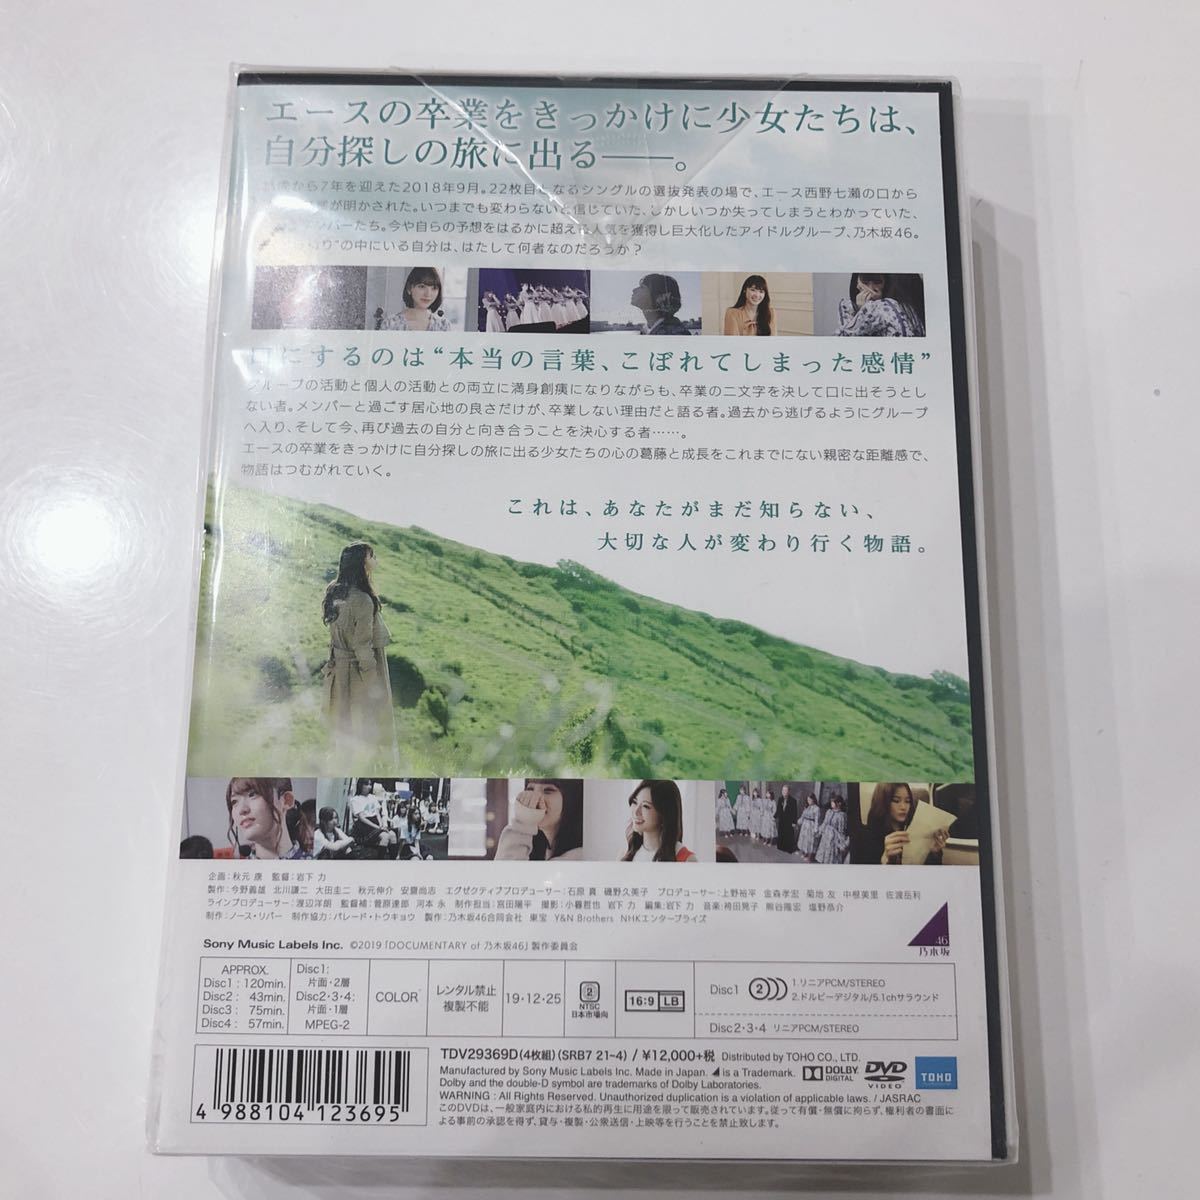 ☆新品未開封☆ いつのまにか、ここにいる Documentary of 乃木坂46 コンプリートBOX 4枚組 封入特典 豪華ブックレットDVD 送料無料 _画像2